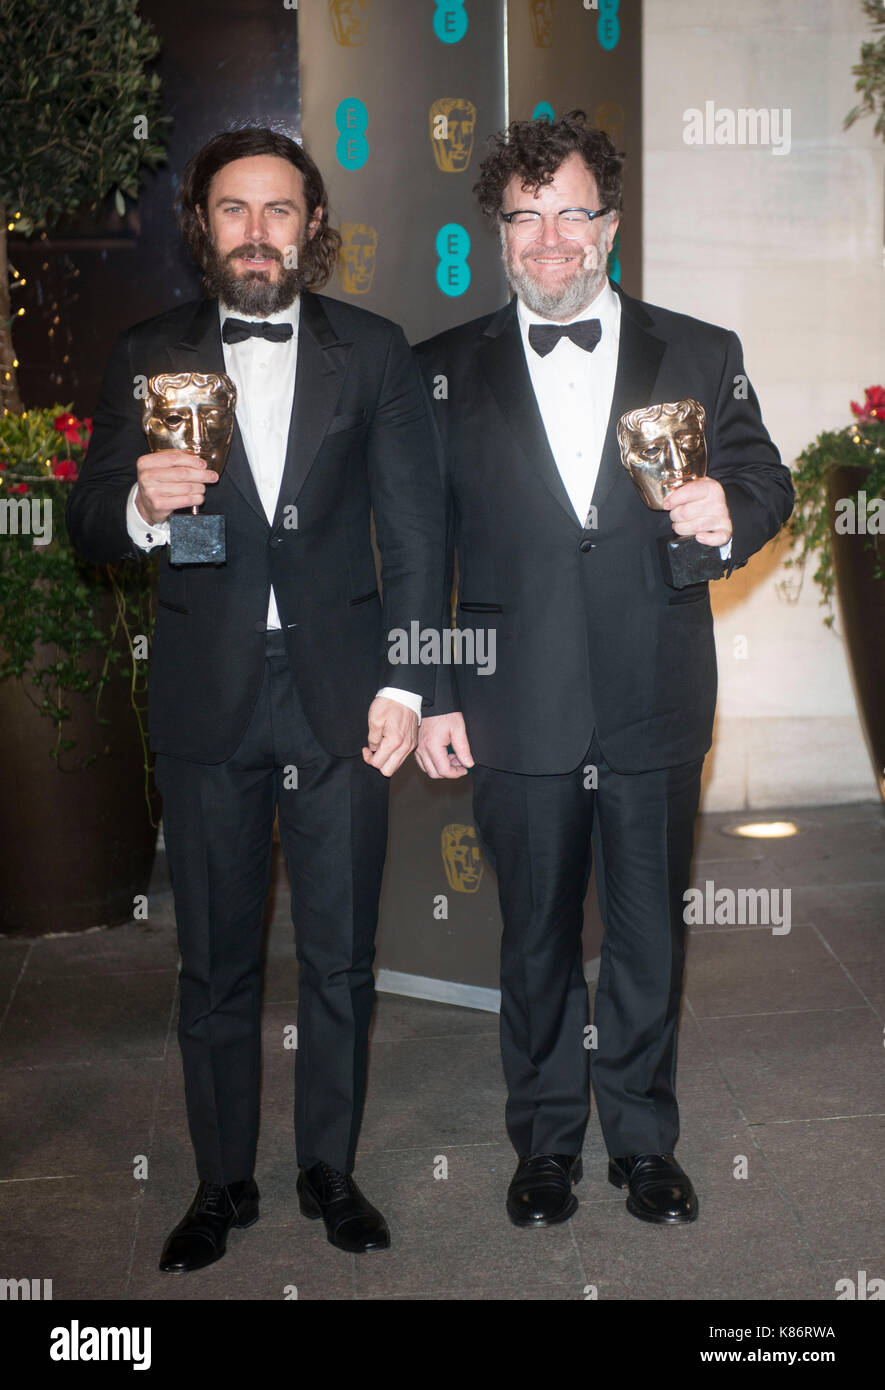 Casey Affleck und Kenneth Lonergan auf der offiziellen nach Partei für die 70Th ccaEE British Academy Film Awards 2017 nach - Partei Abendessen im Grosvenor House Hotel am 12. Februar 2017 in London, England Stockfoto